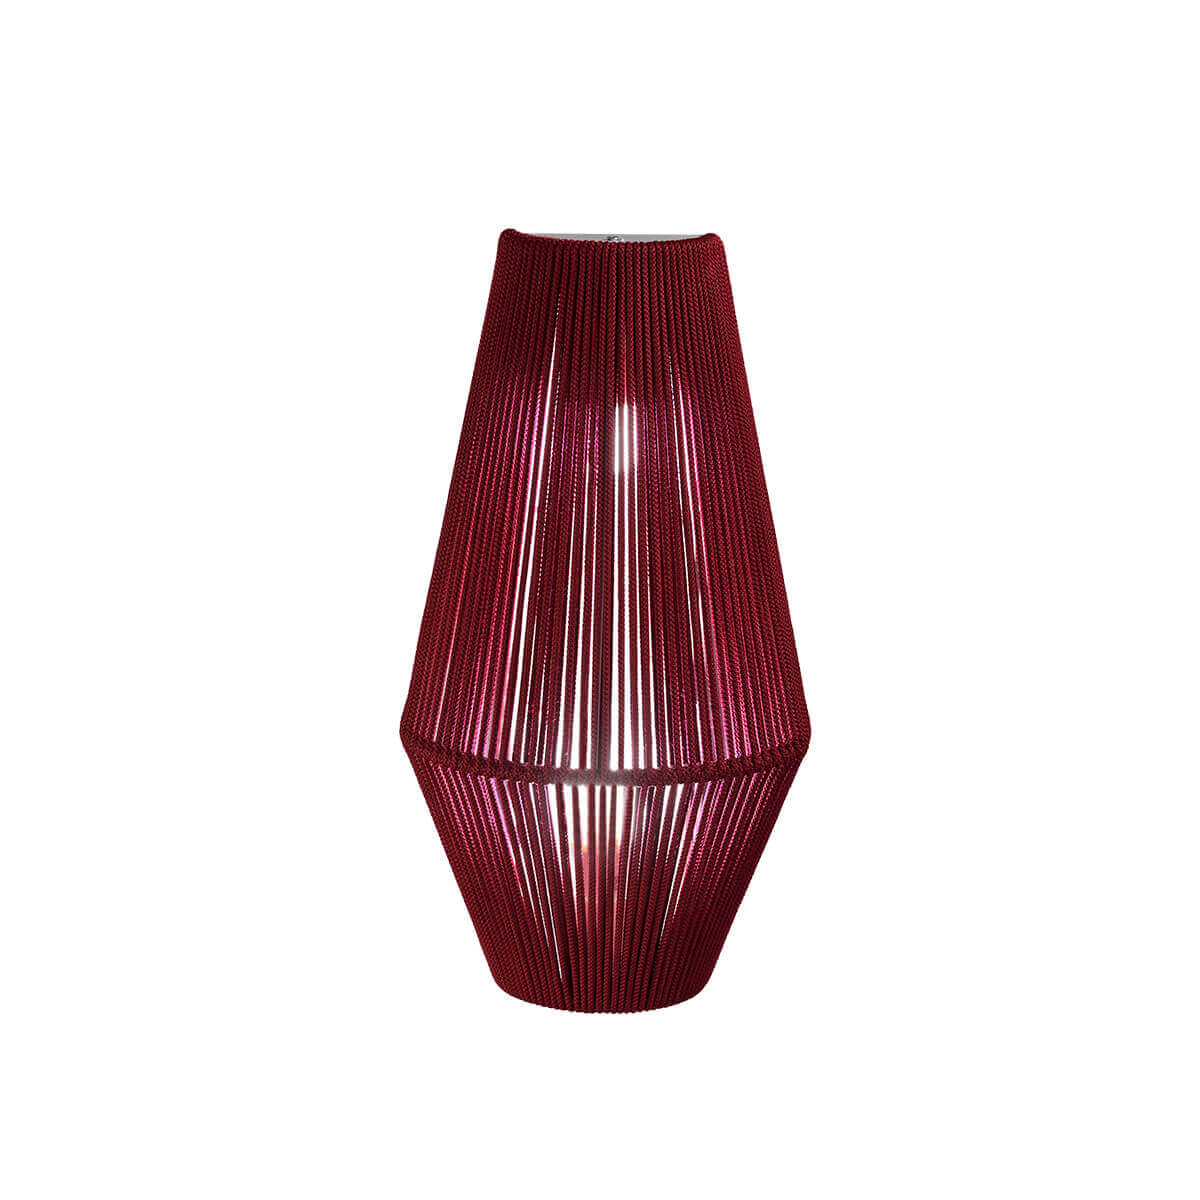 UKELELE - Wall lamp 26 cm | E27